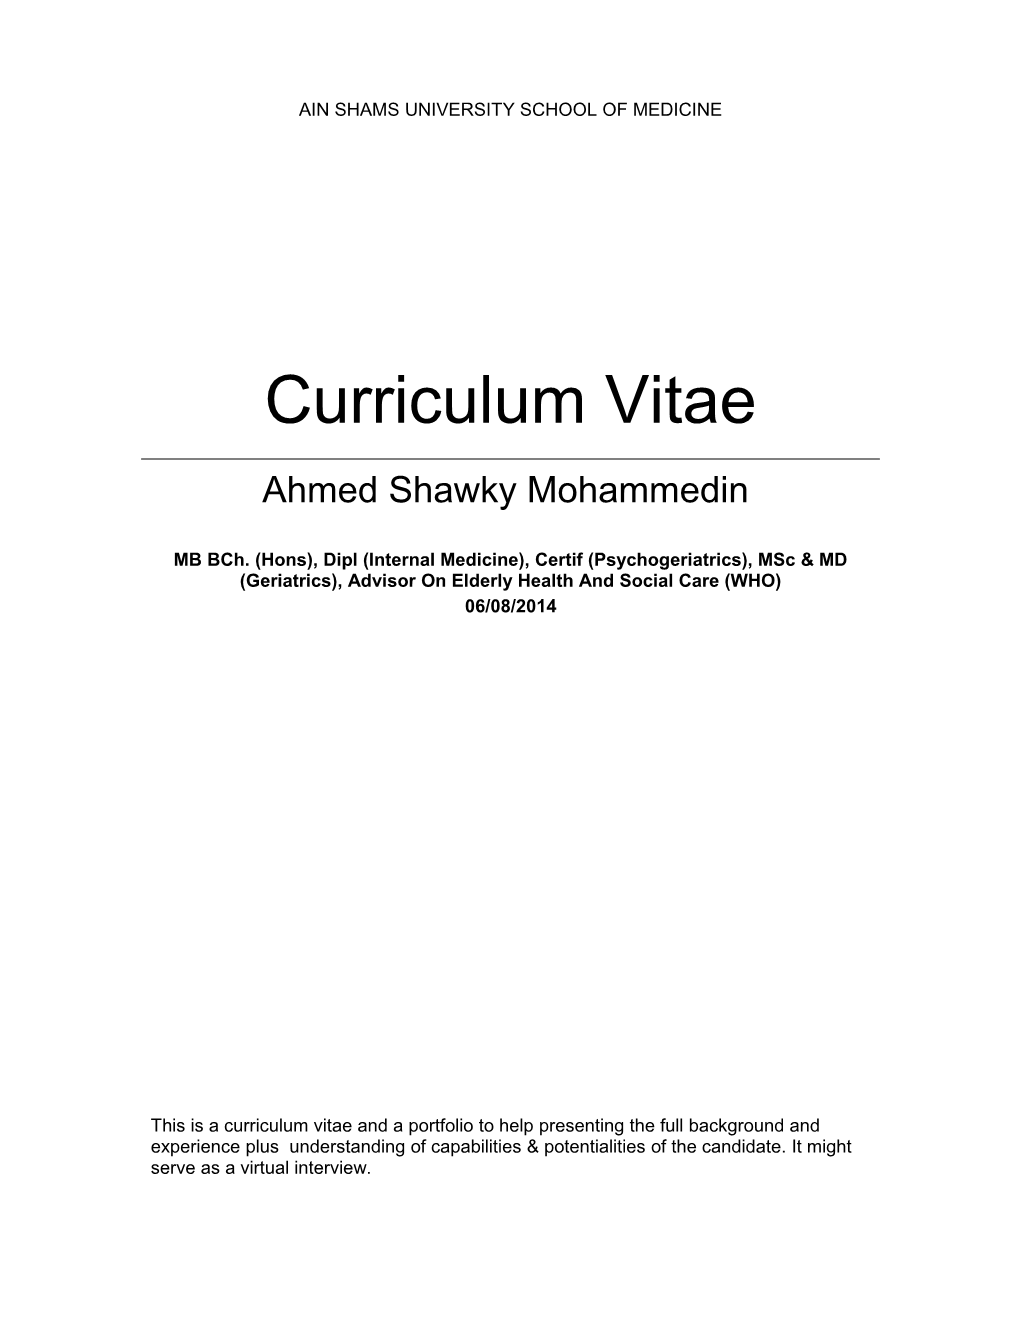 Ahmed Shawky Mohammedin CV Version 15